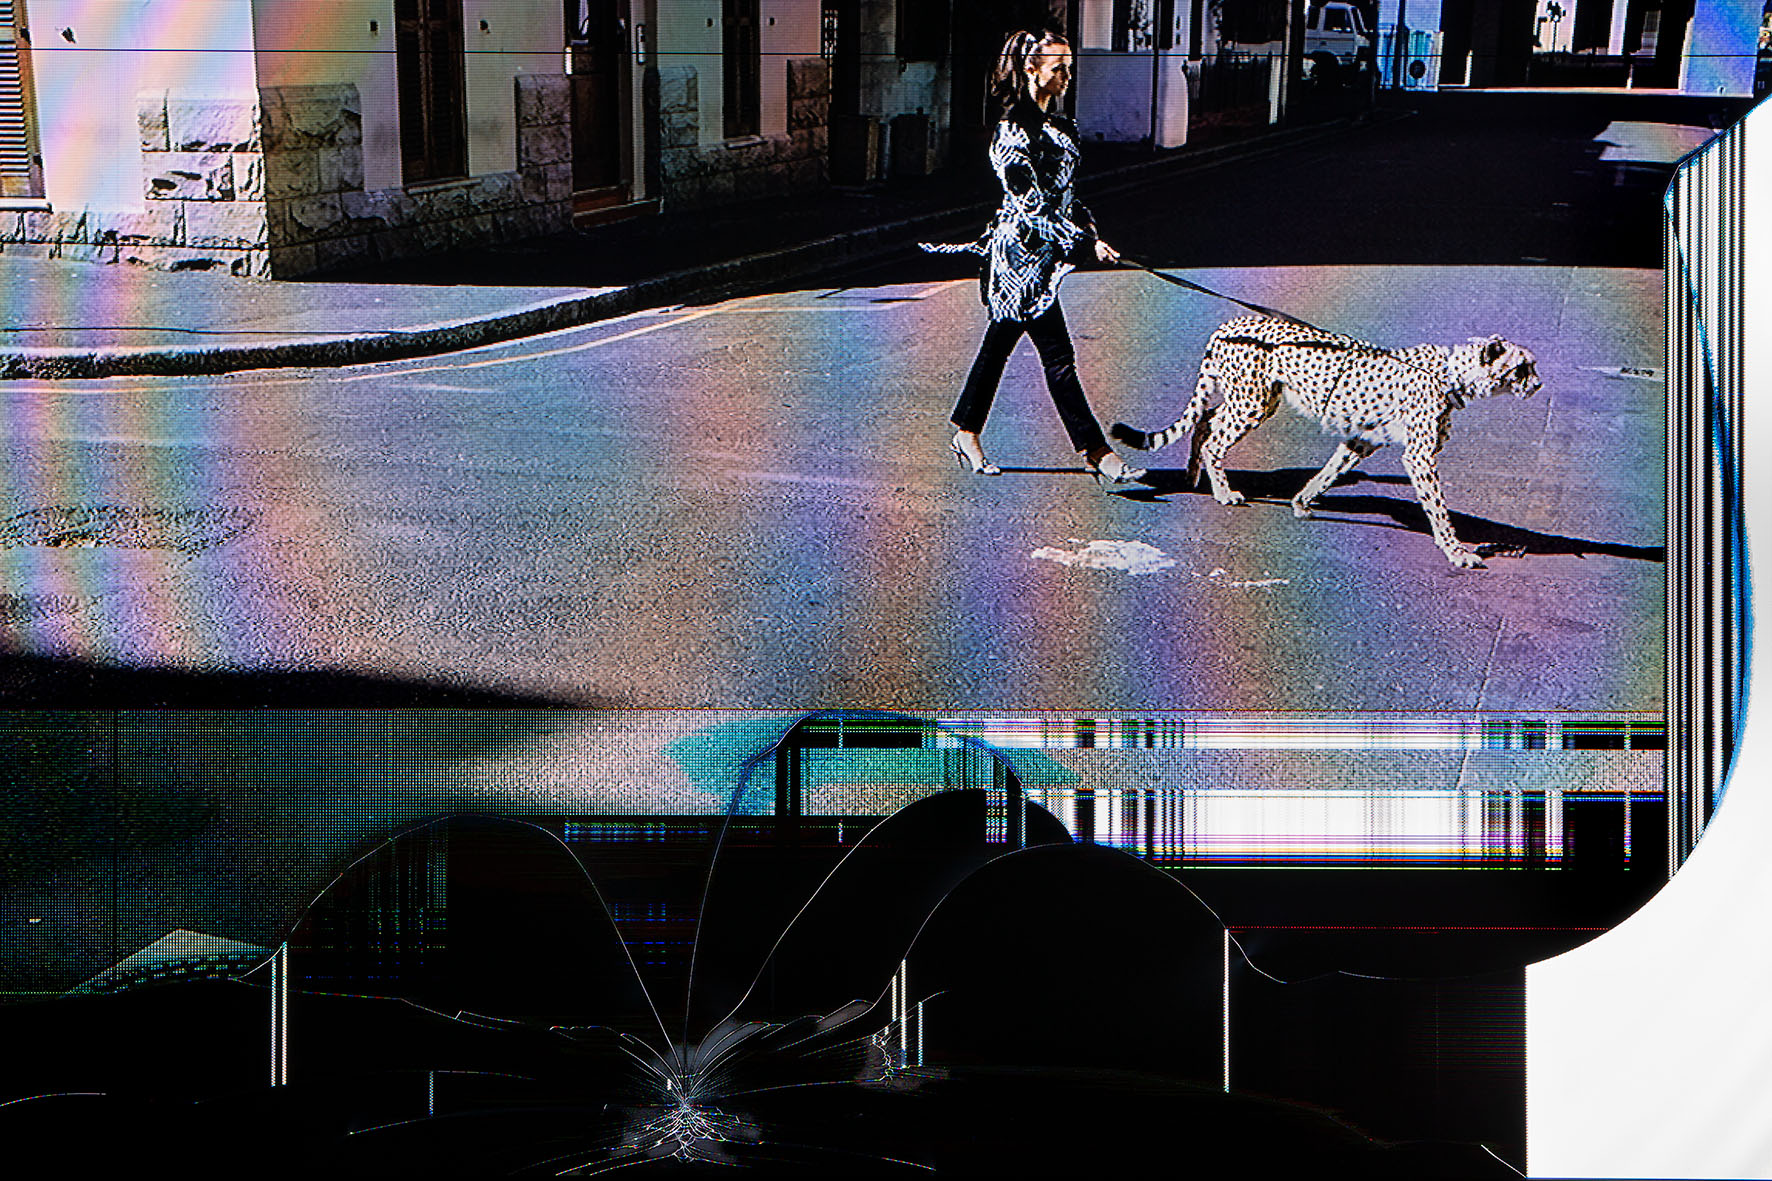 Une photographie d'une femme marchant avec un guépard en laisse occupe les deux tiers verticaux de l'image. Sur le tiers inférieur, des lignes blanches, traces d'impact laissent comprendre une surface cassée d'écran